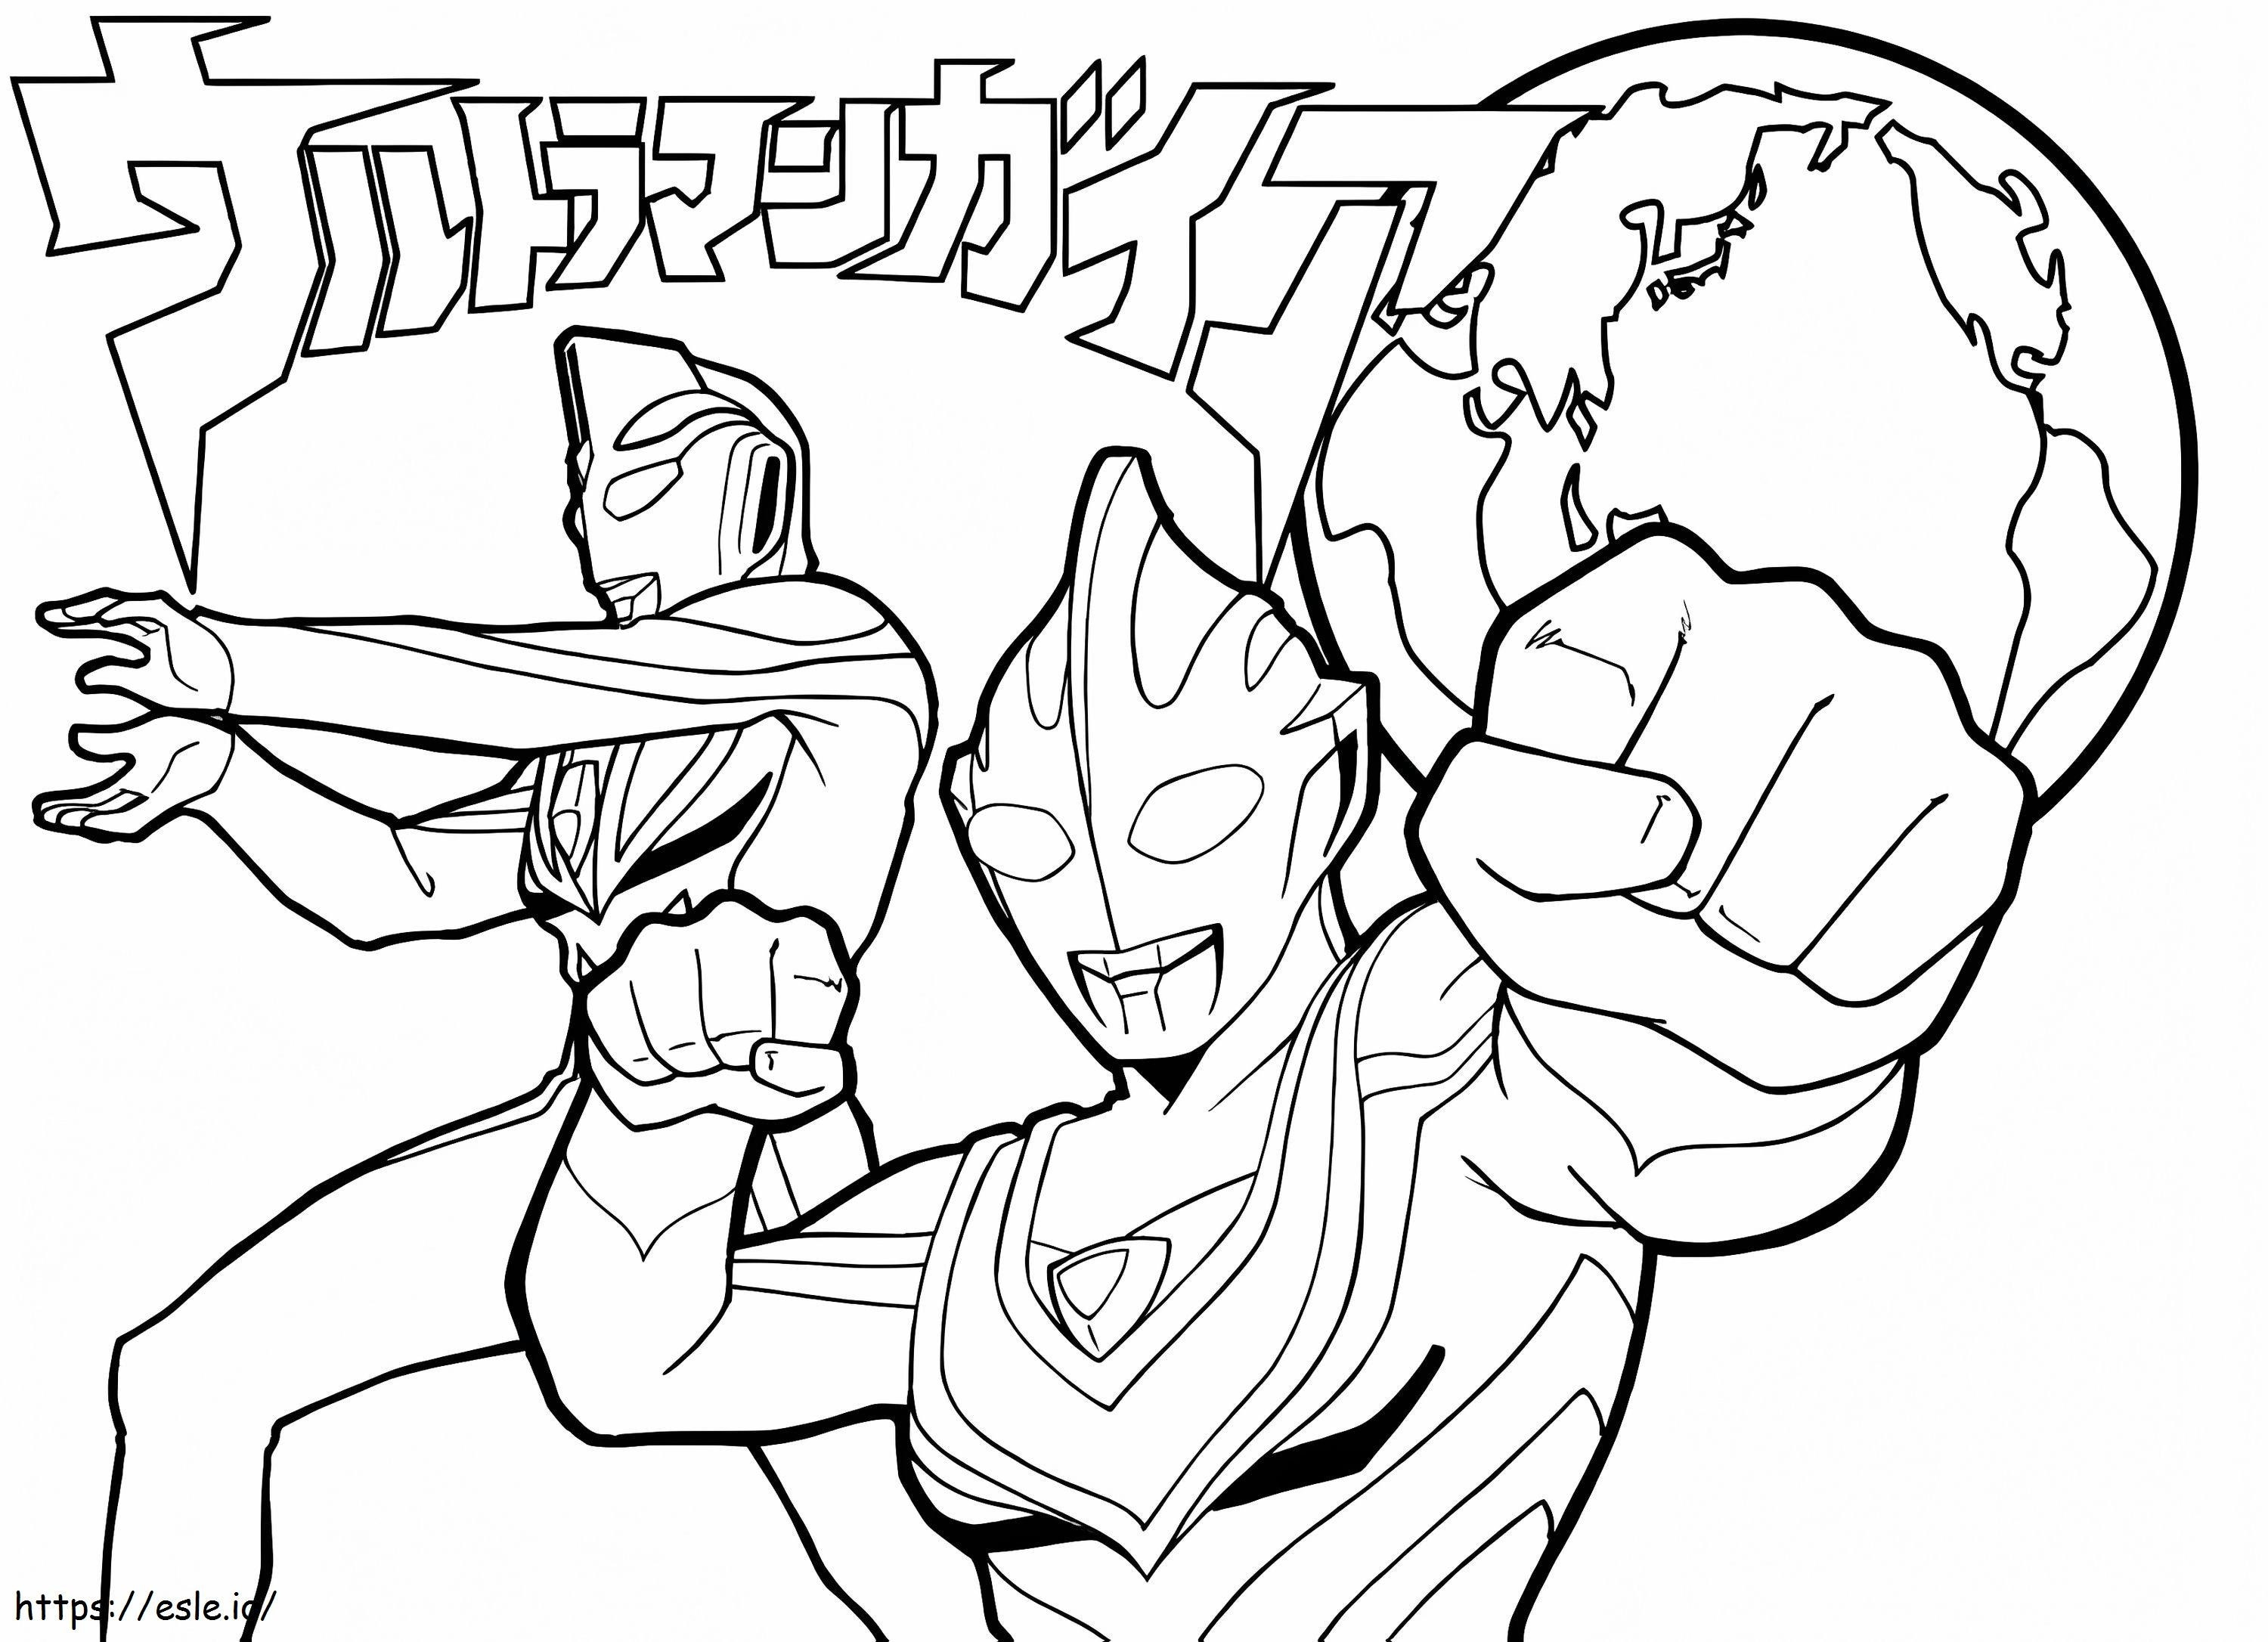 Ultraman luchando 5 para colorear